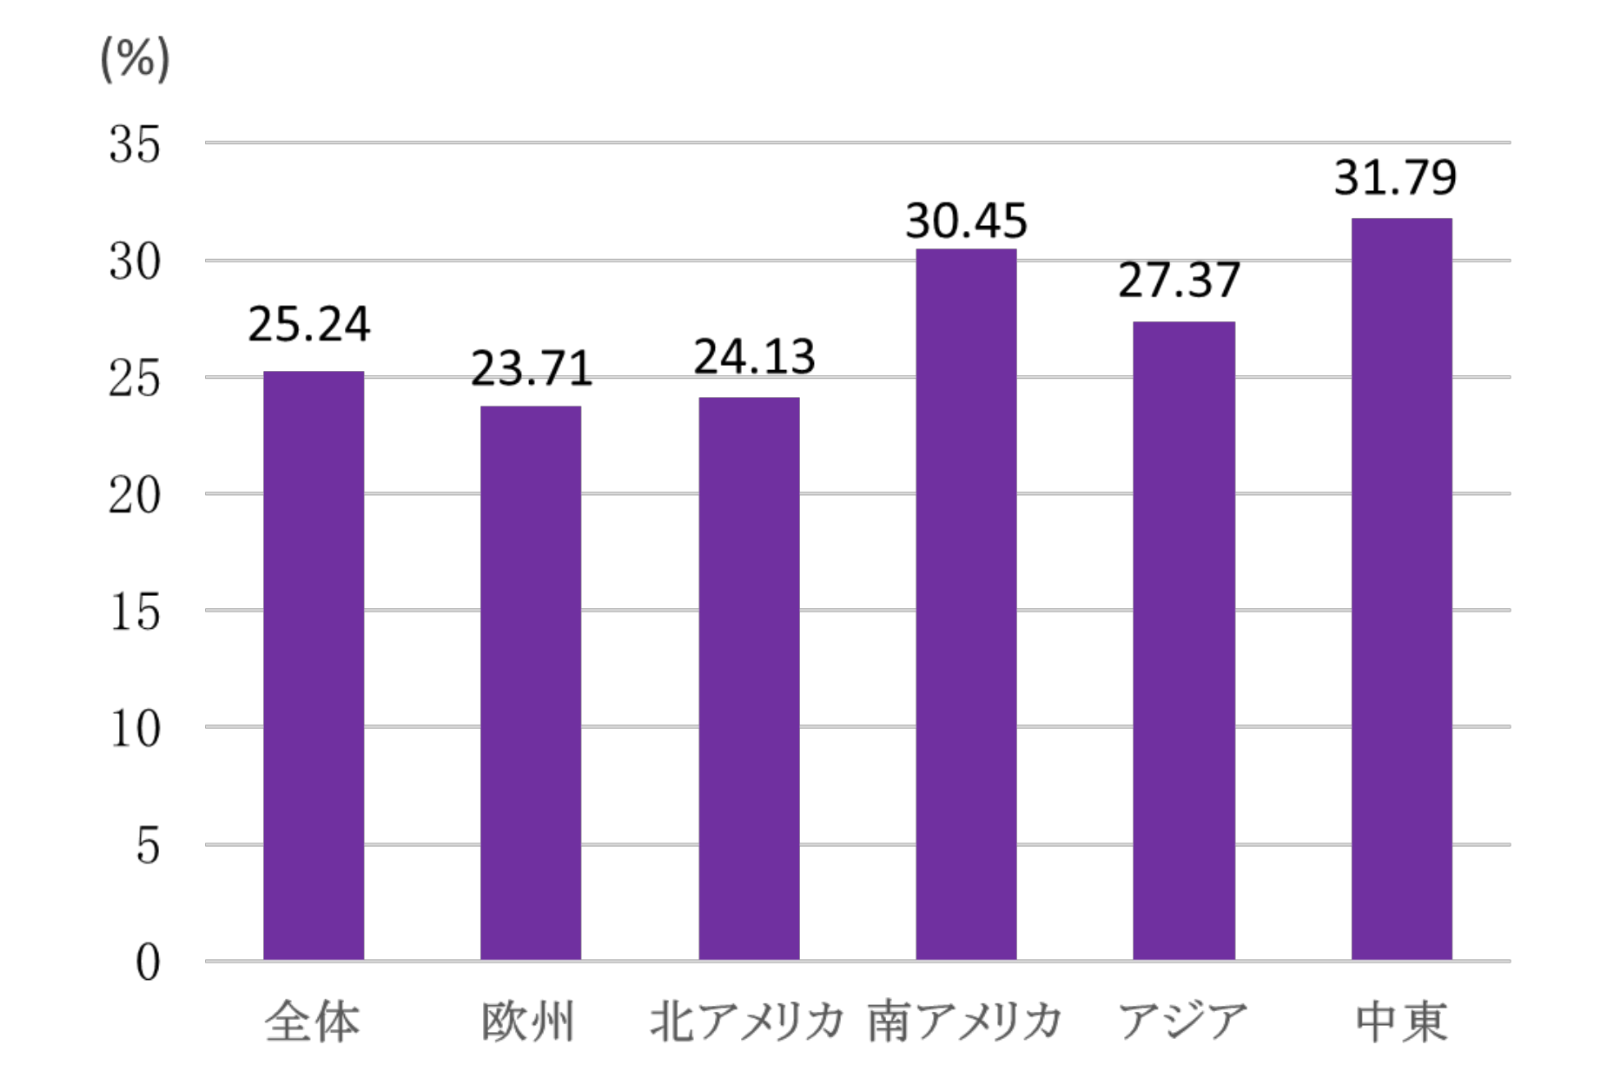 NAFLDの頻度の国際比較